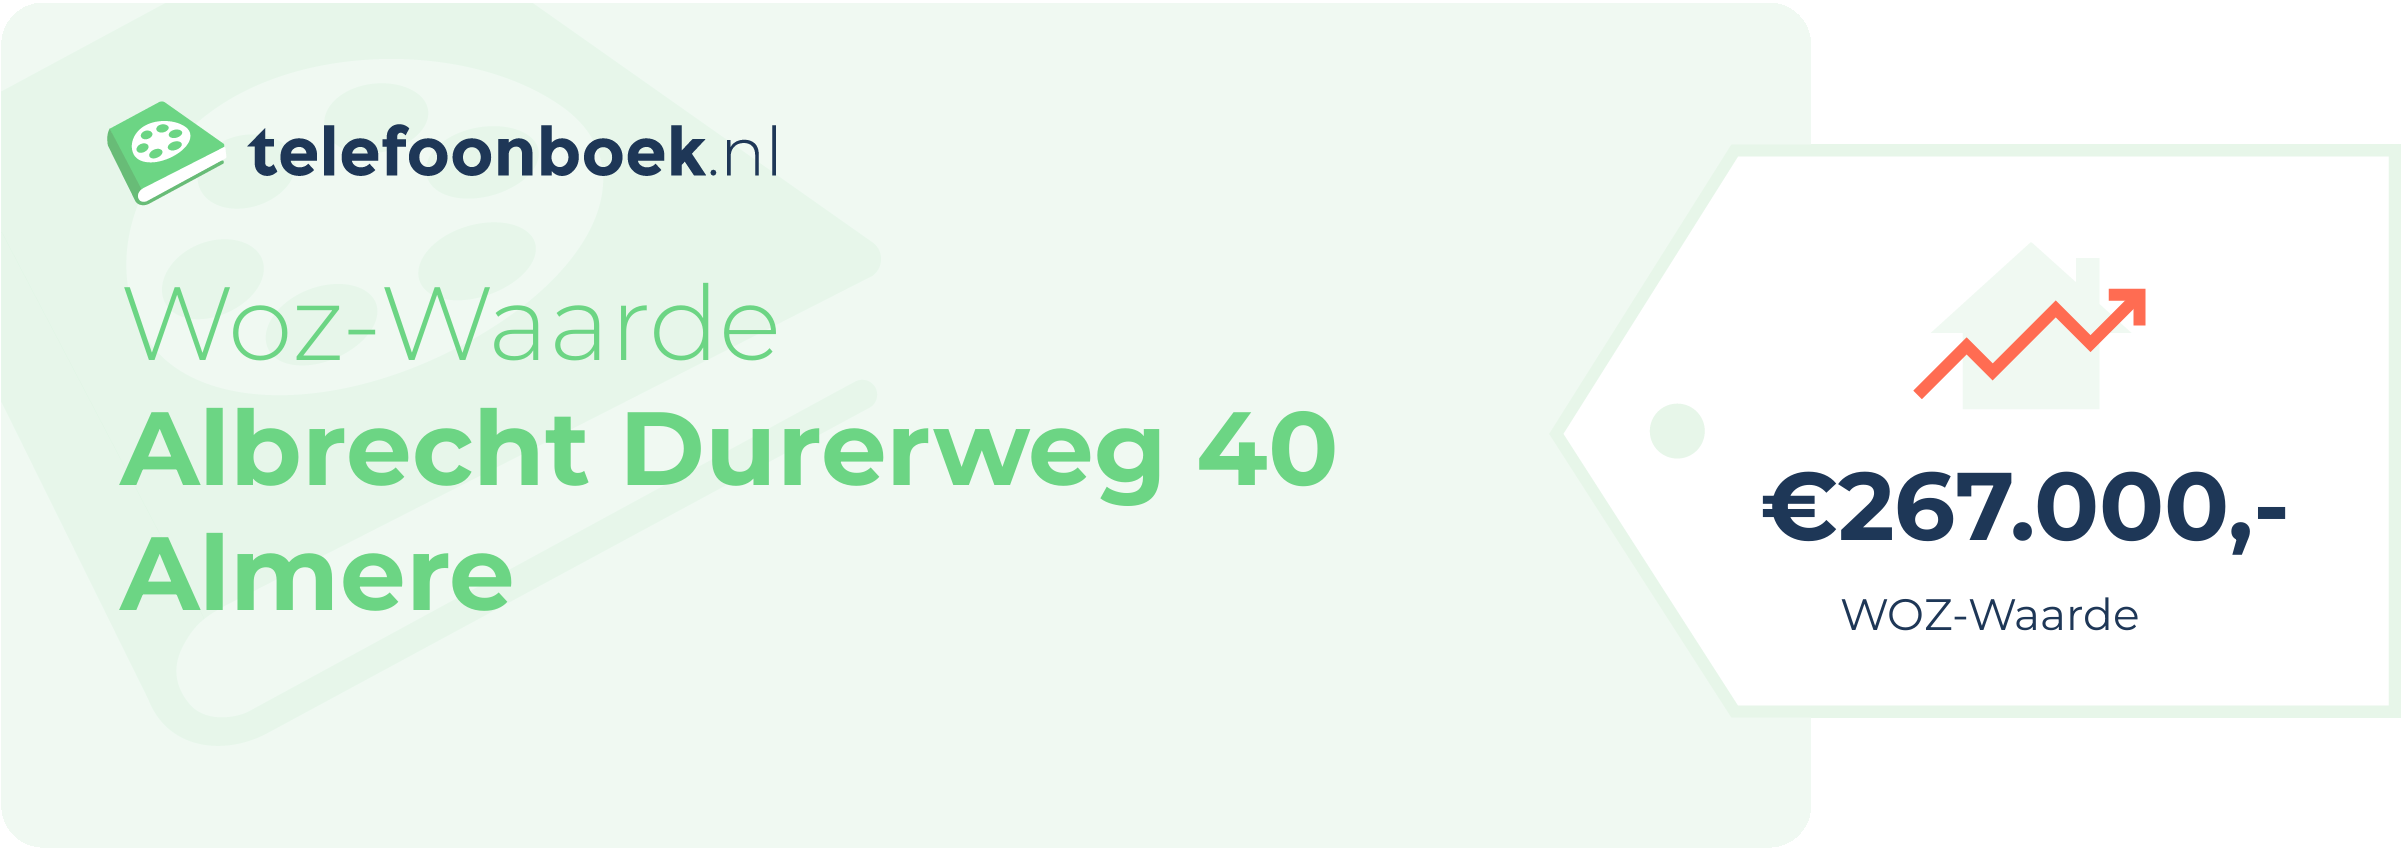 WOZ-waarde Albrecht Durerweg 40 Almere